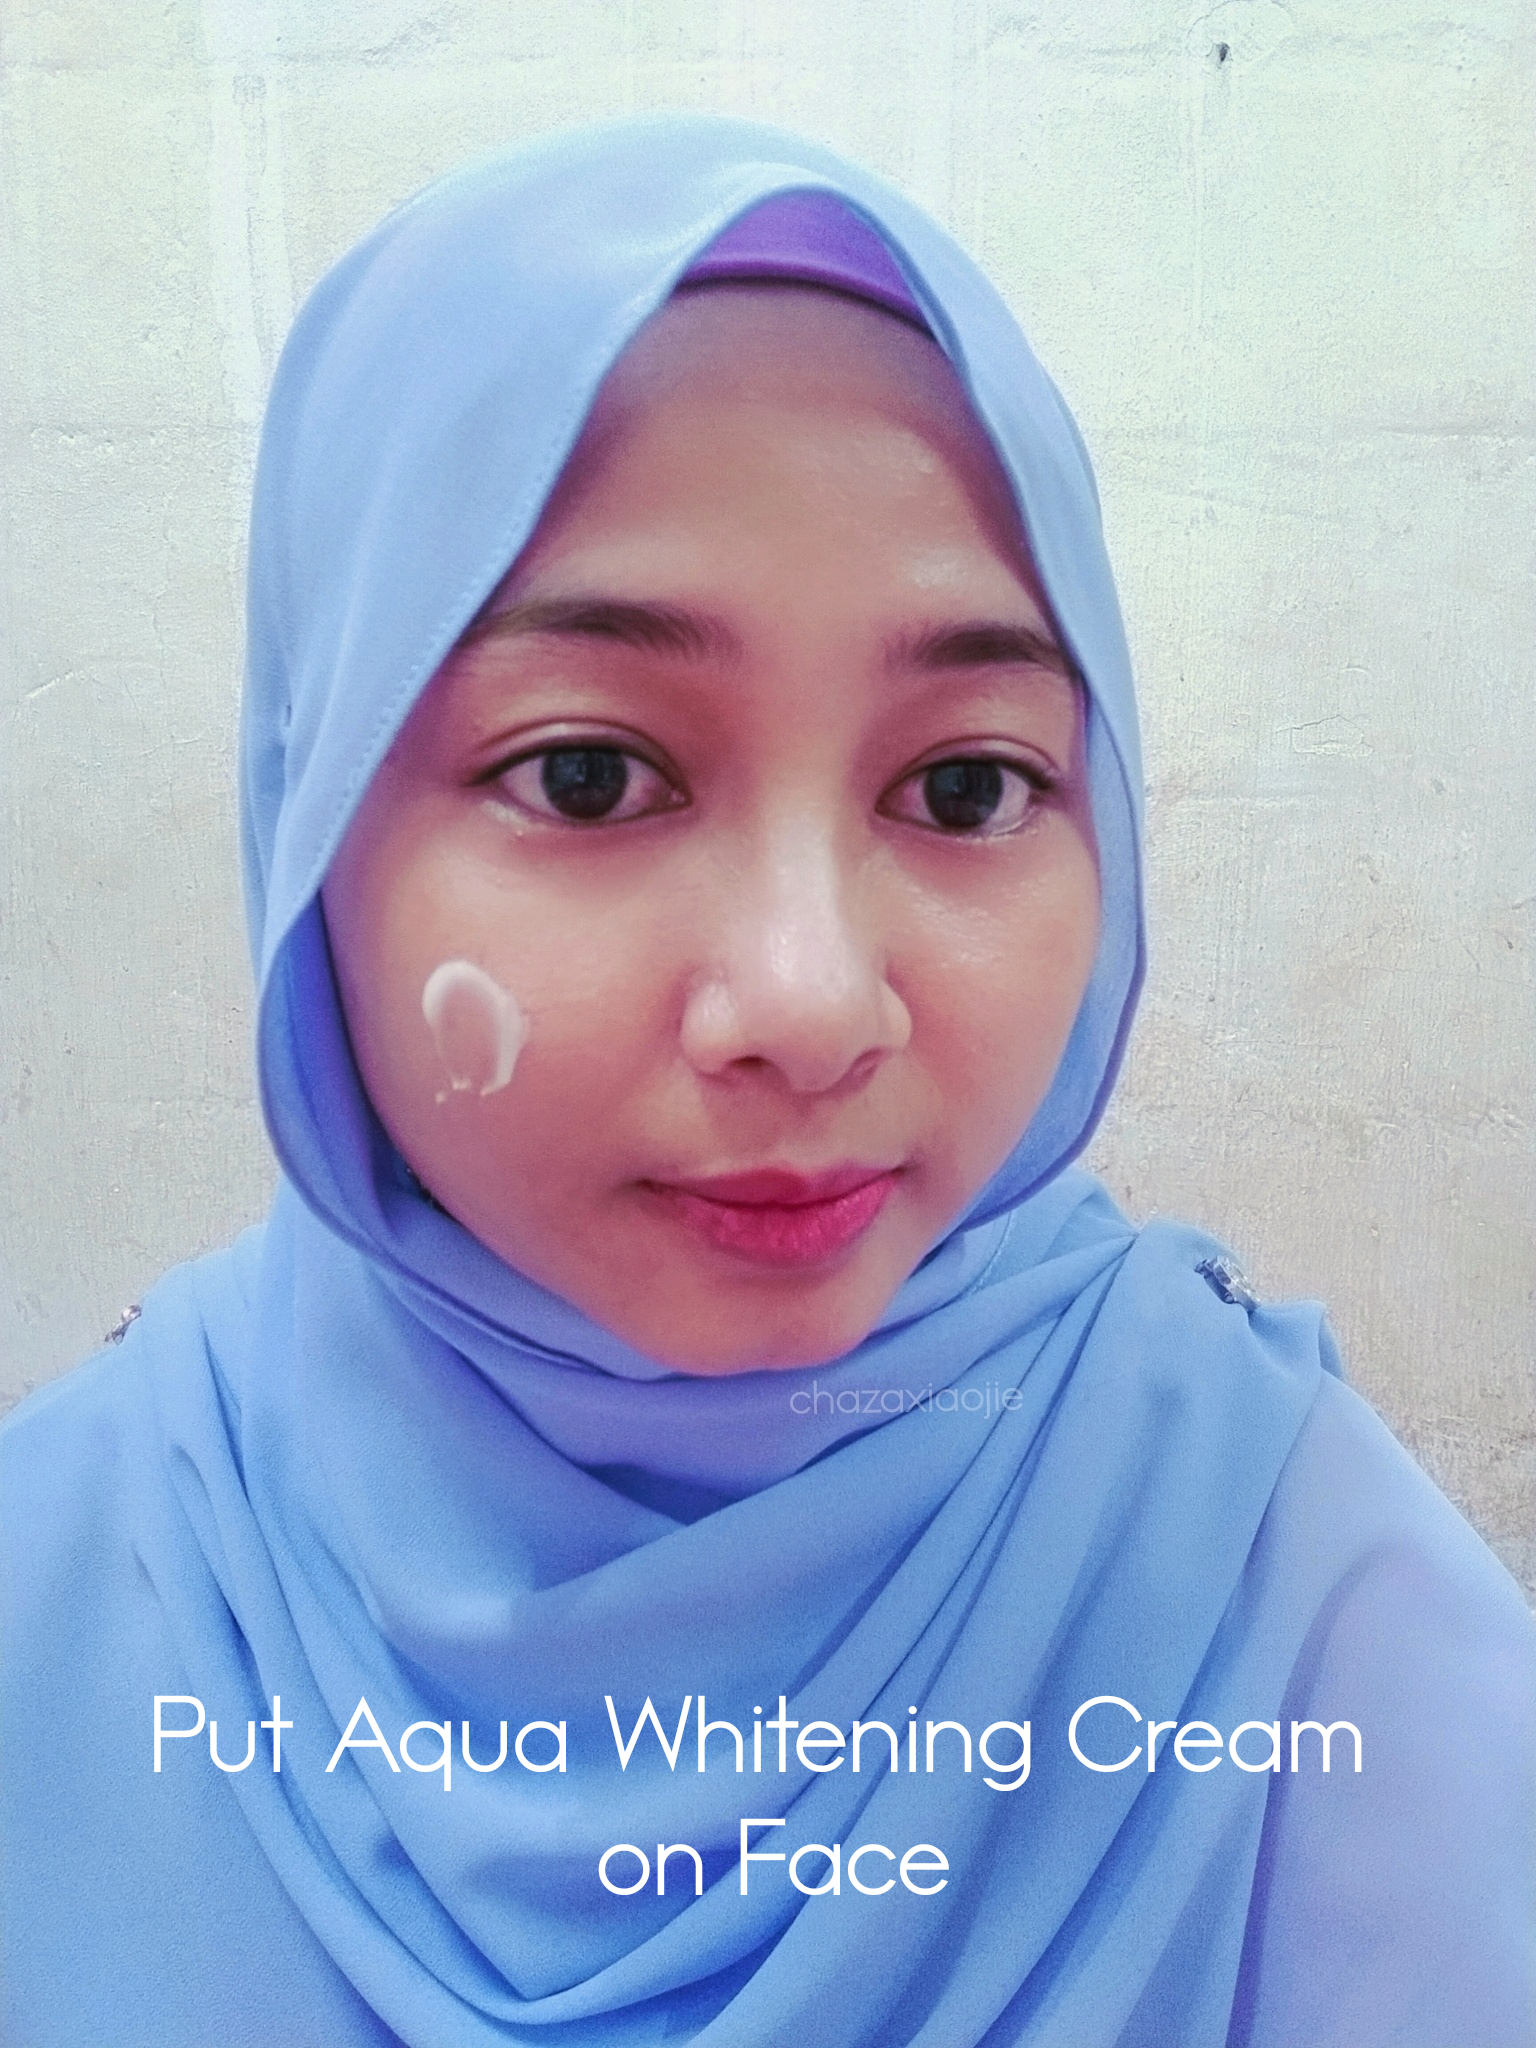 Aqua whitening cream